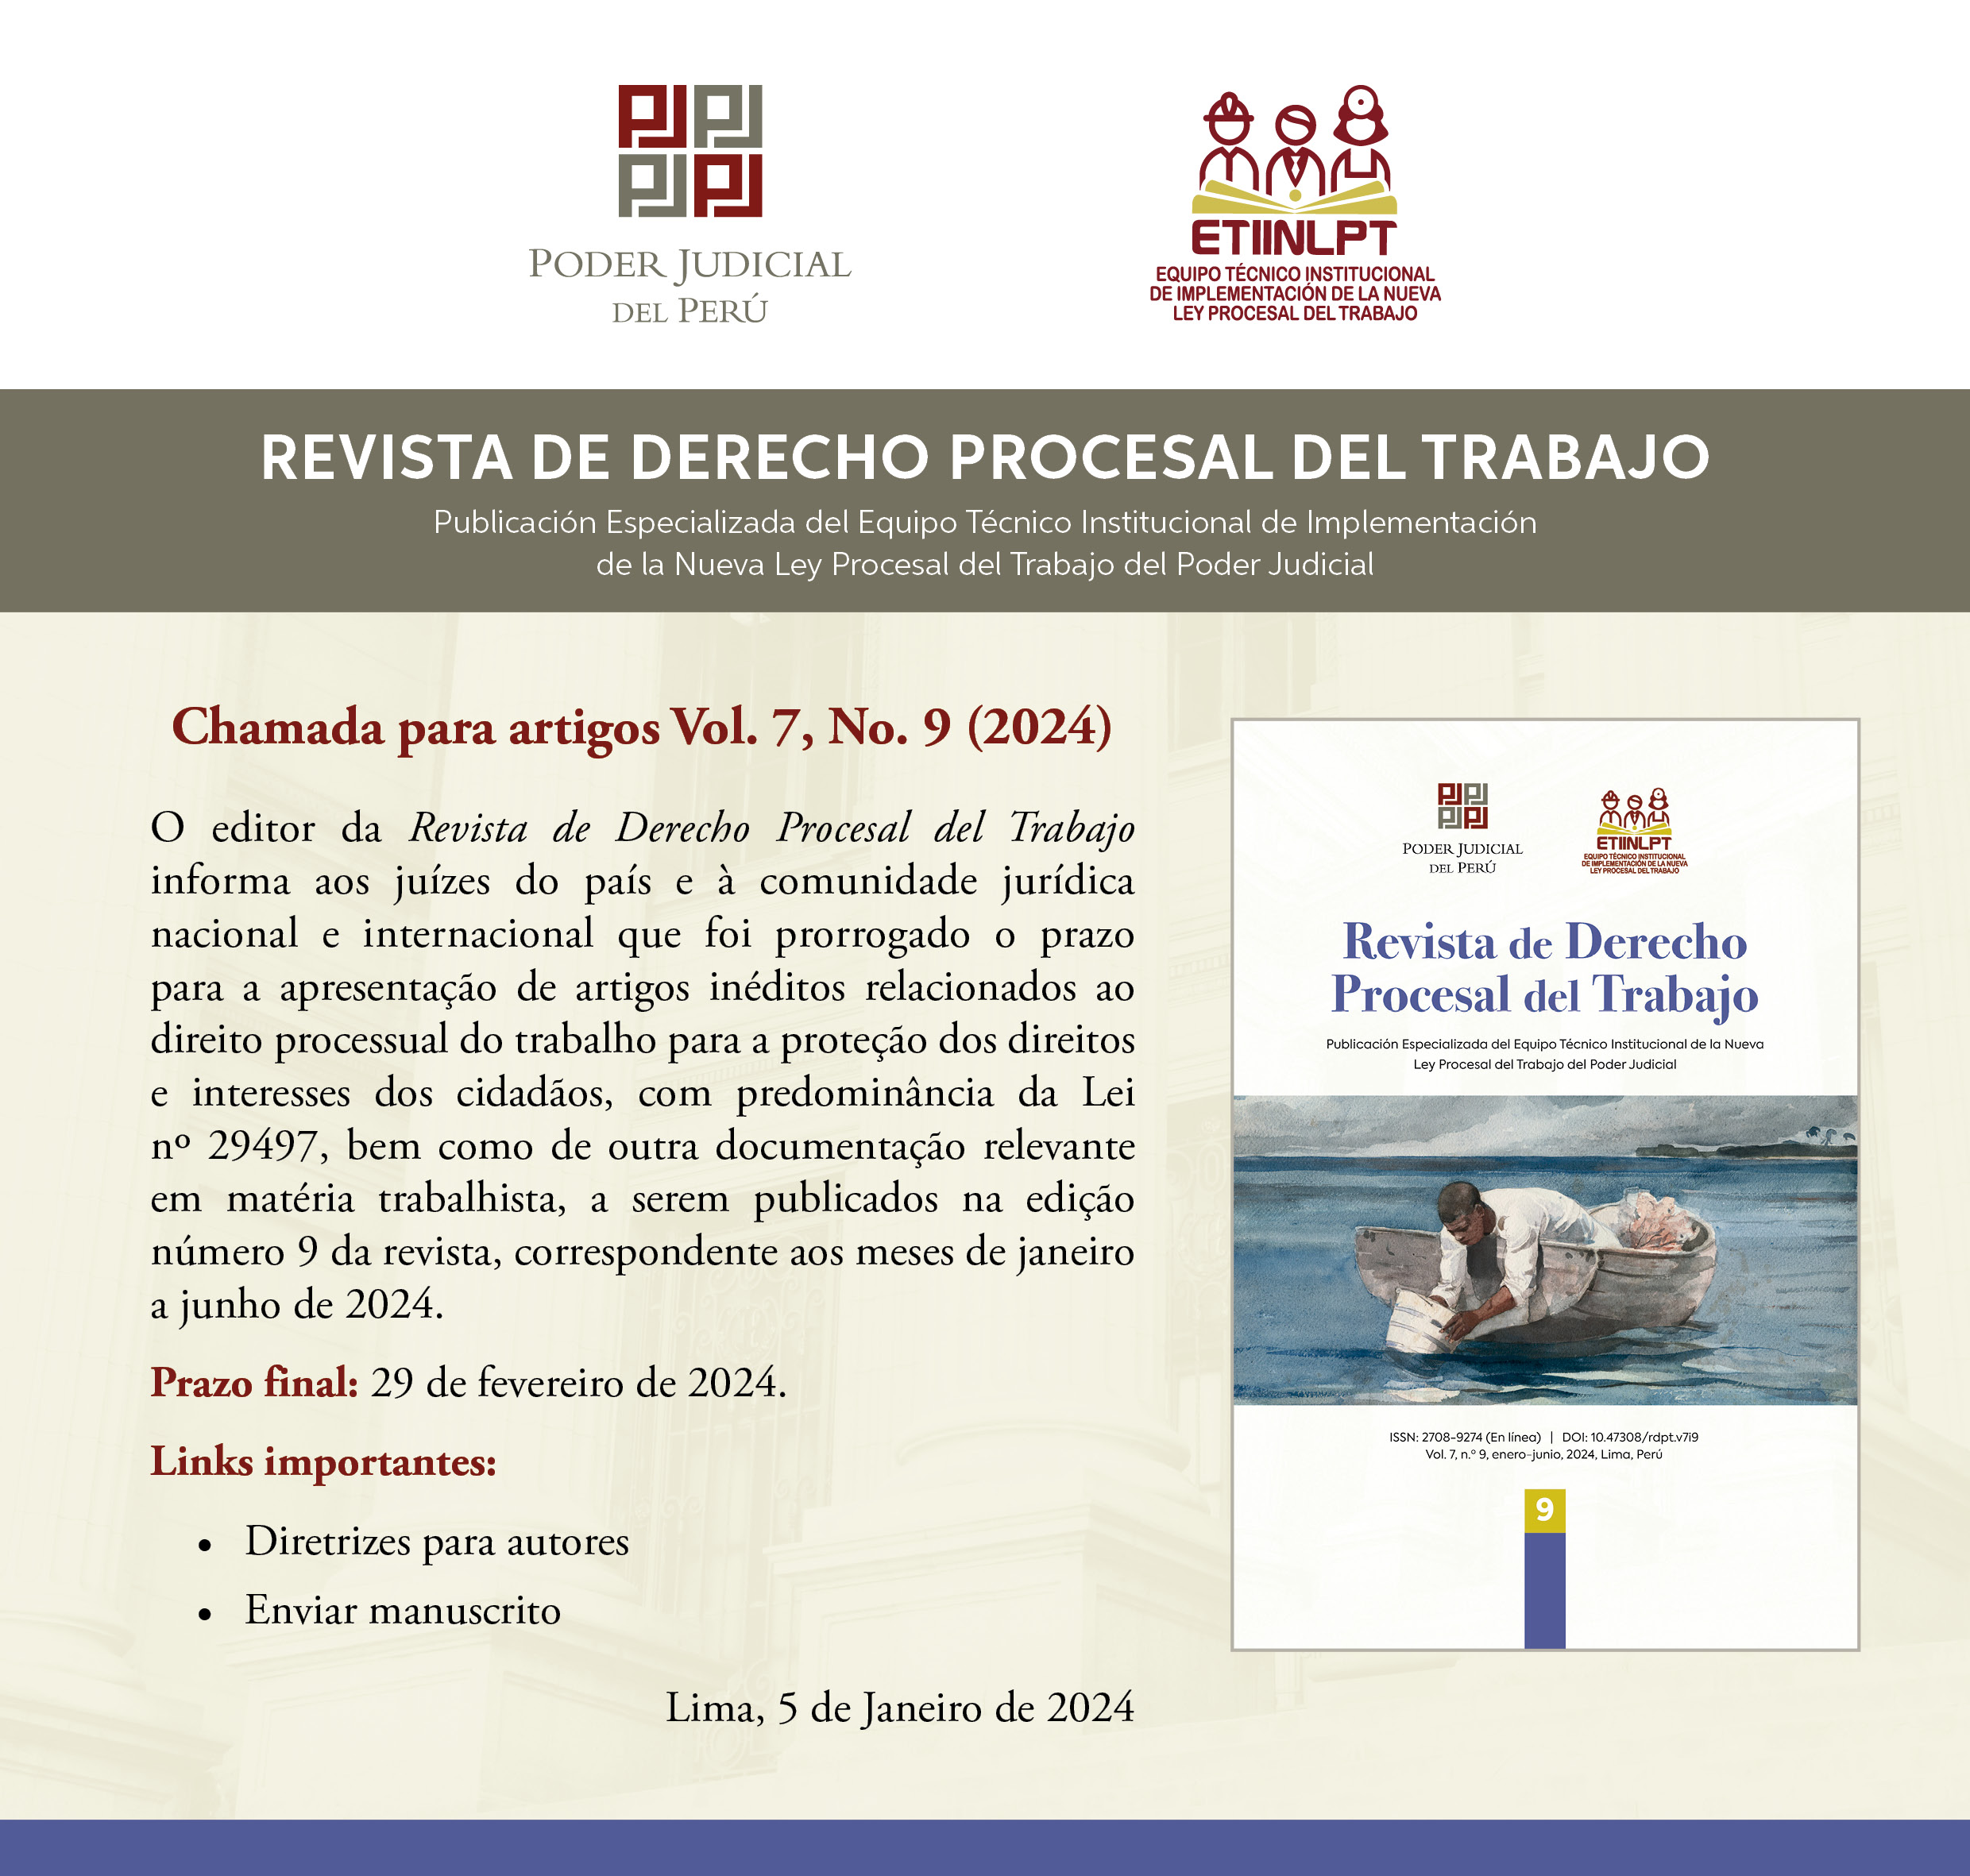 versión_portugués_Revista_de_derecho_procesal_del_trabajo1.jpg